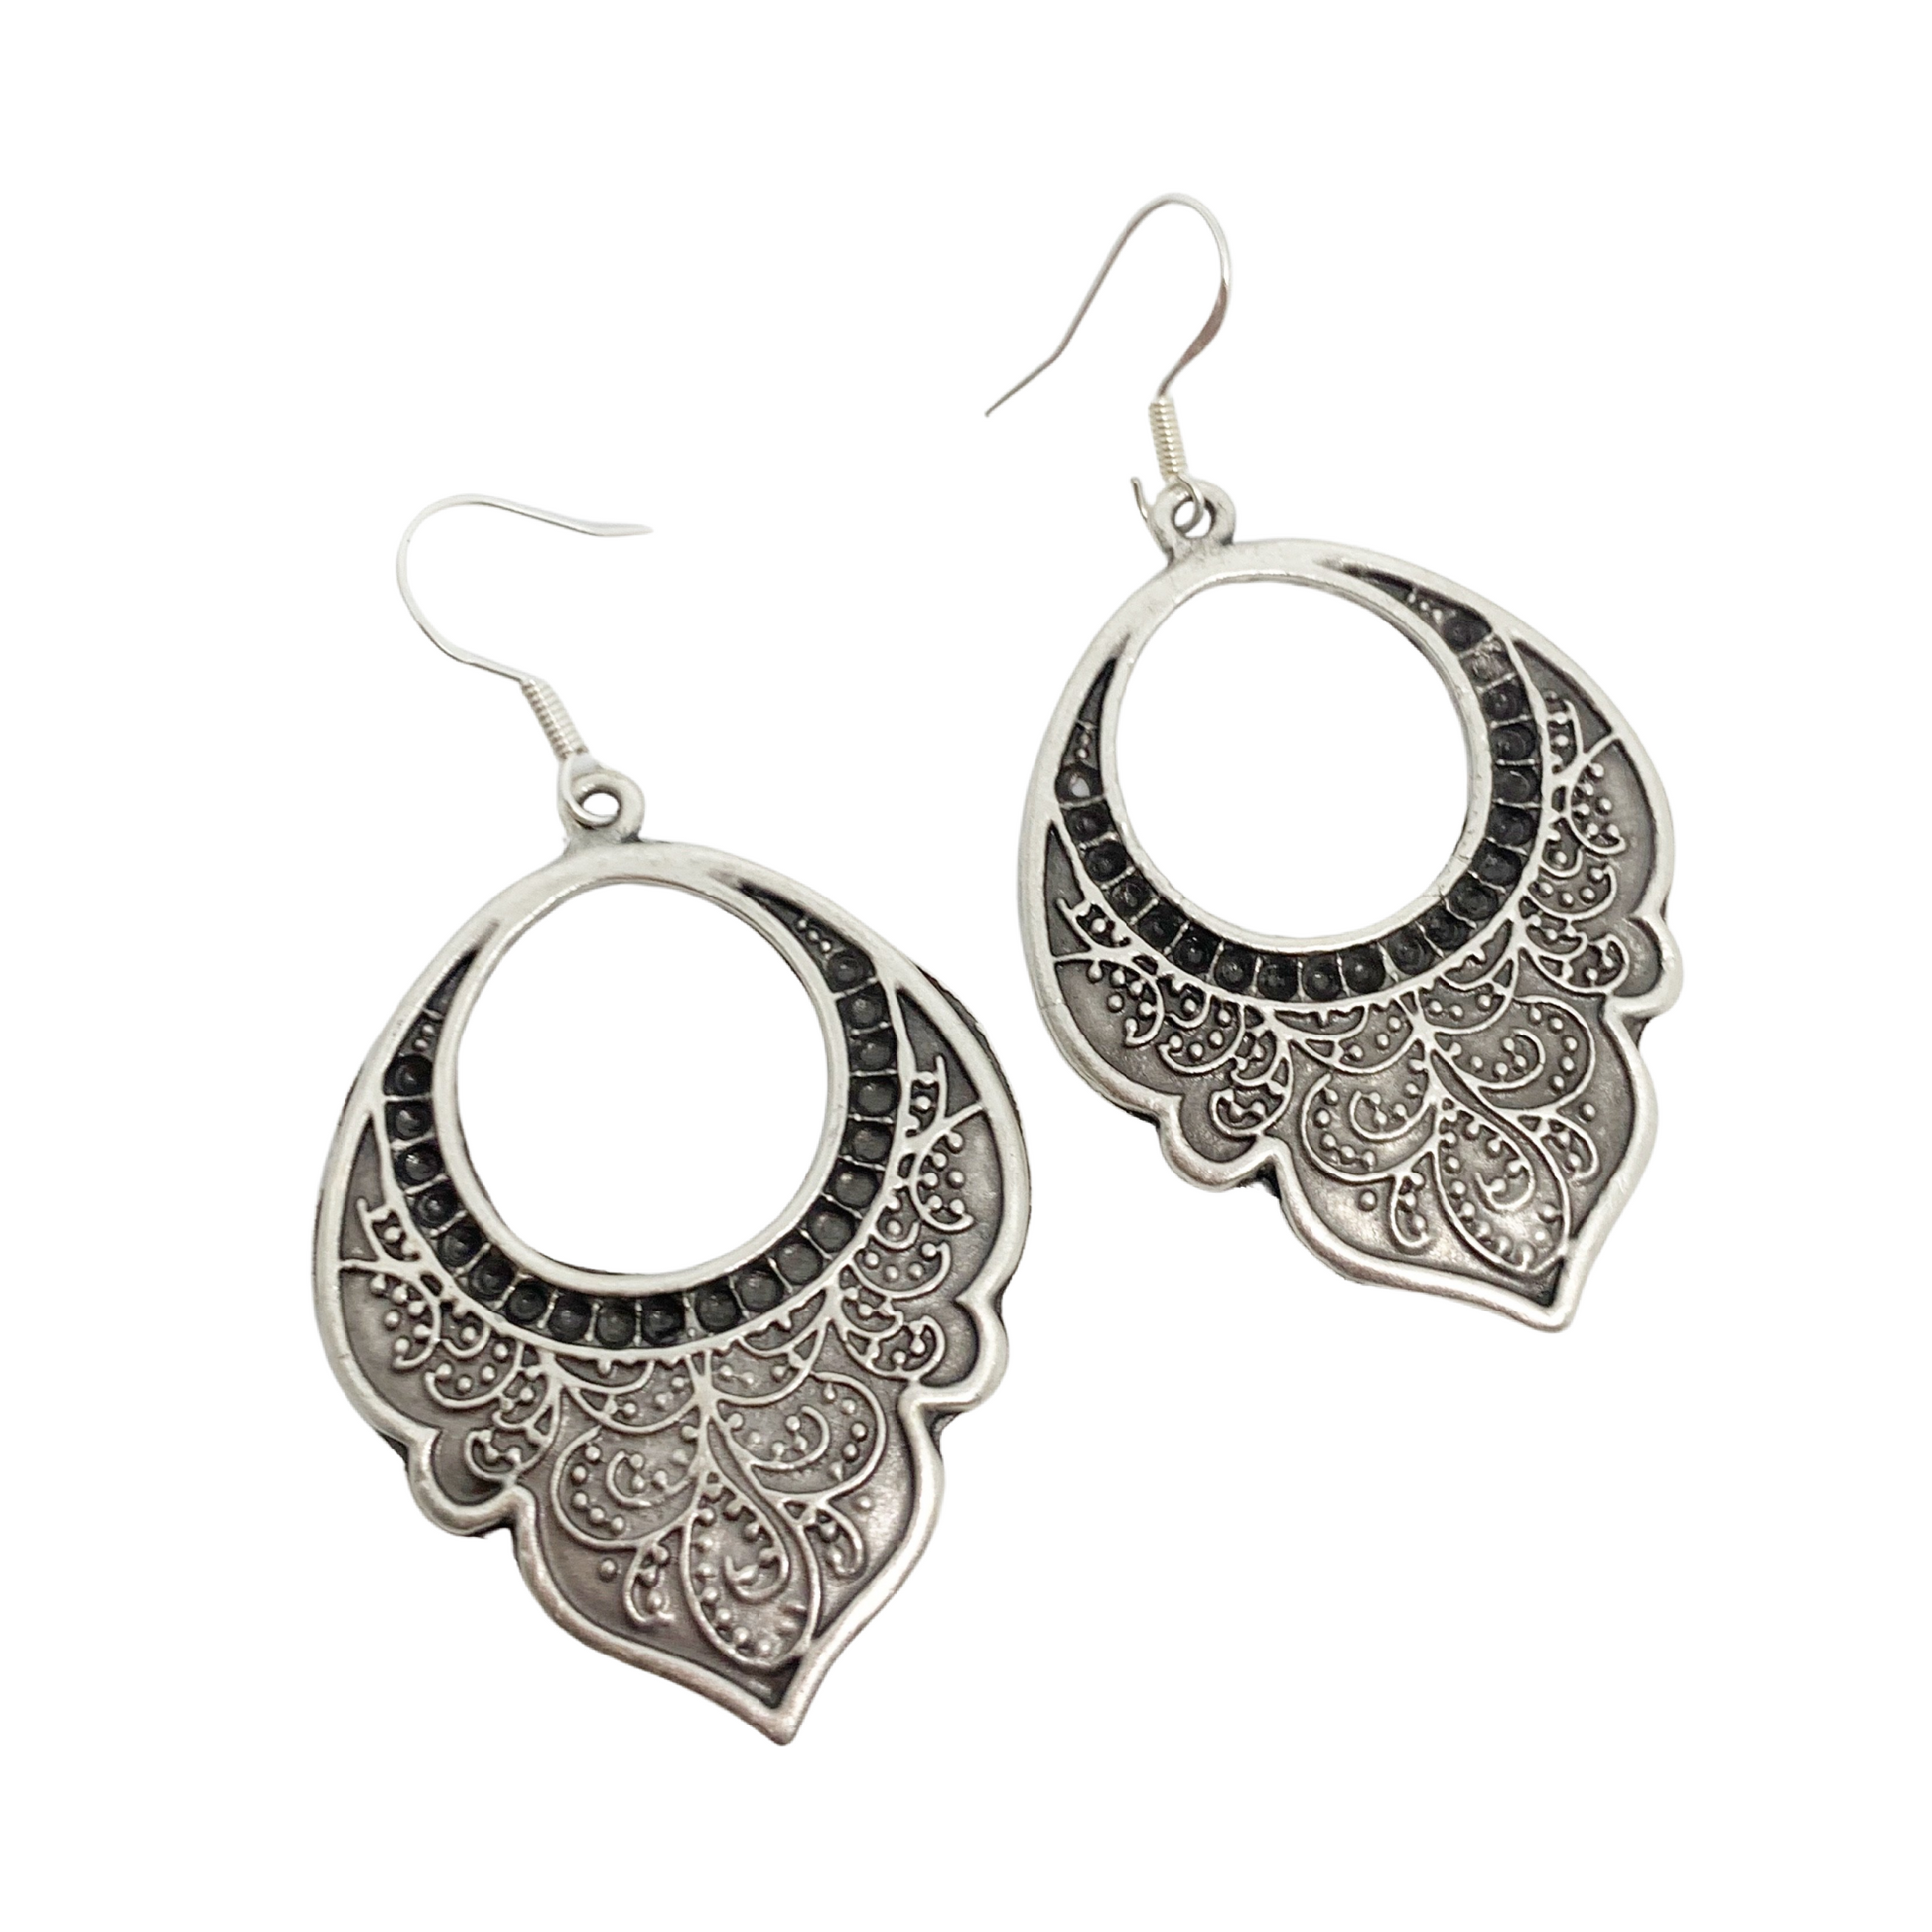 Paisley drops. Filigree, floral, Sterling silver hoop earrings, jewelry. - Andria Bieber Designs 